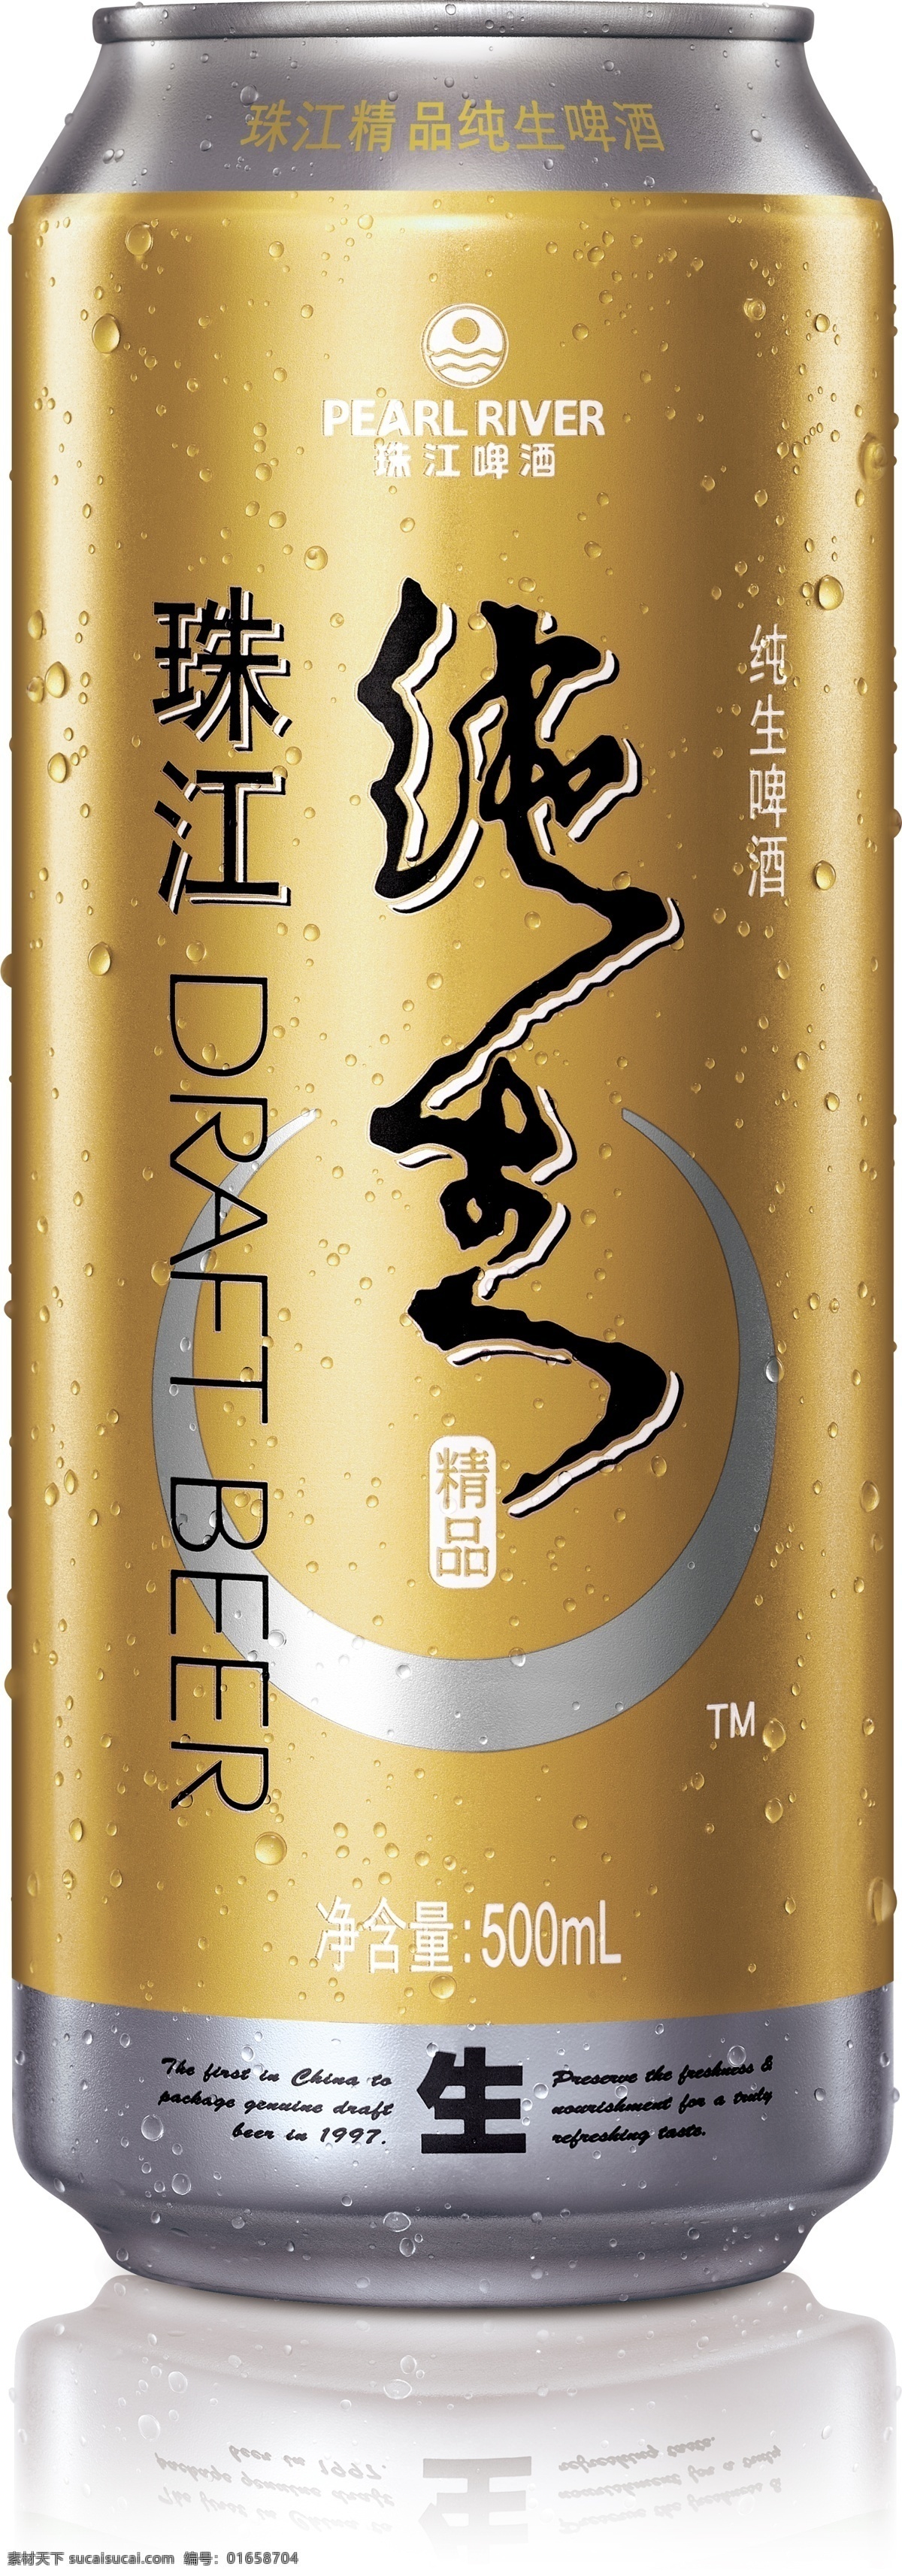 珠江啤酒 珠江纯生 珠江 啤酒 纯生 啤酒瓶